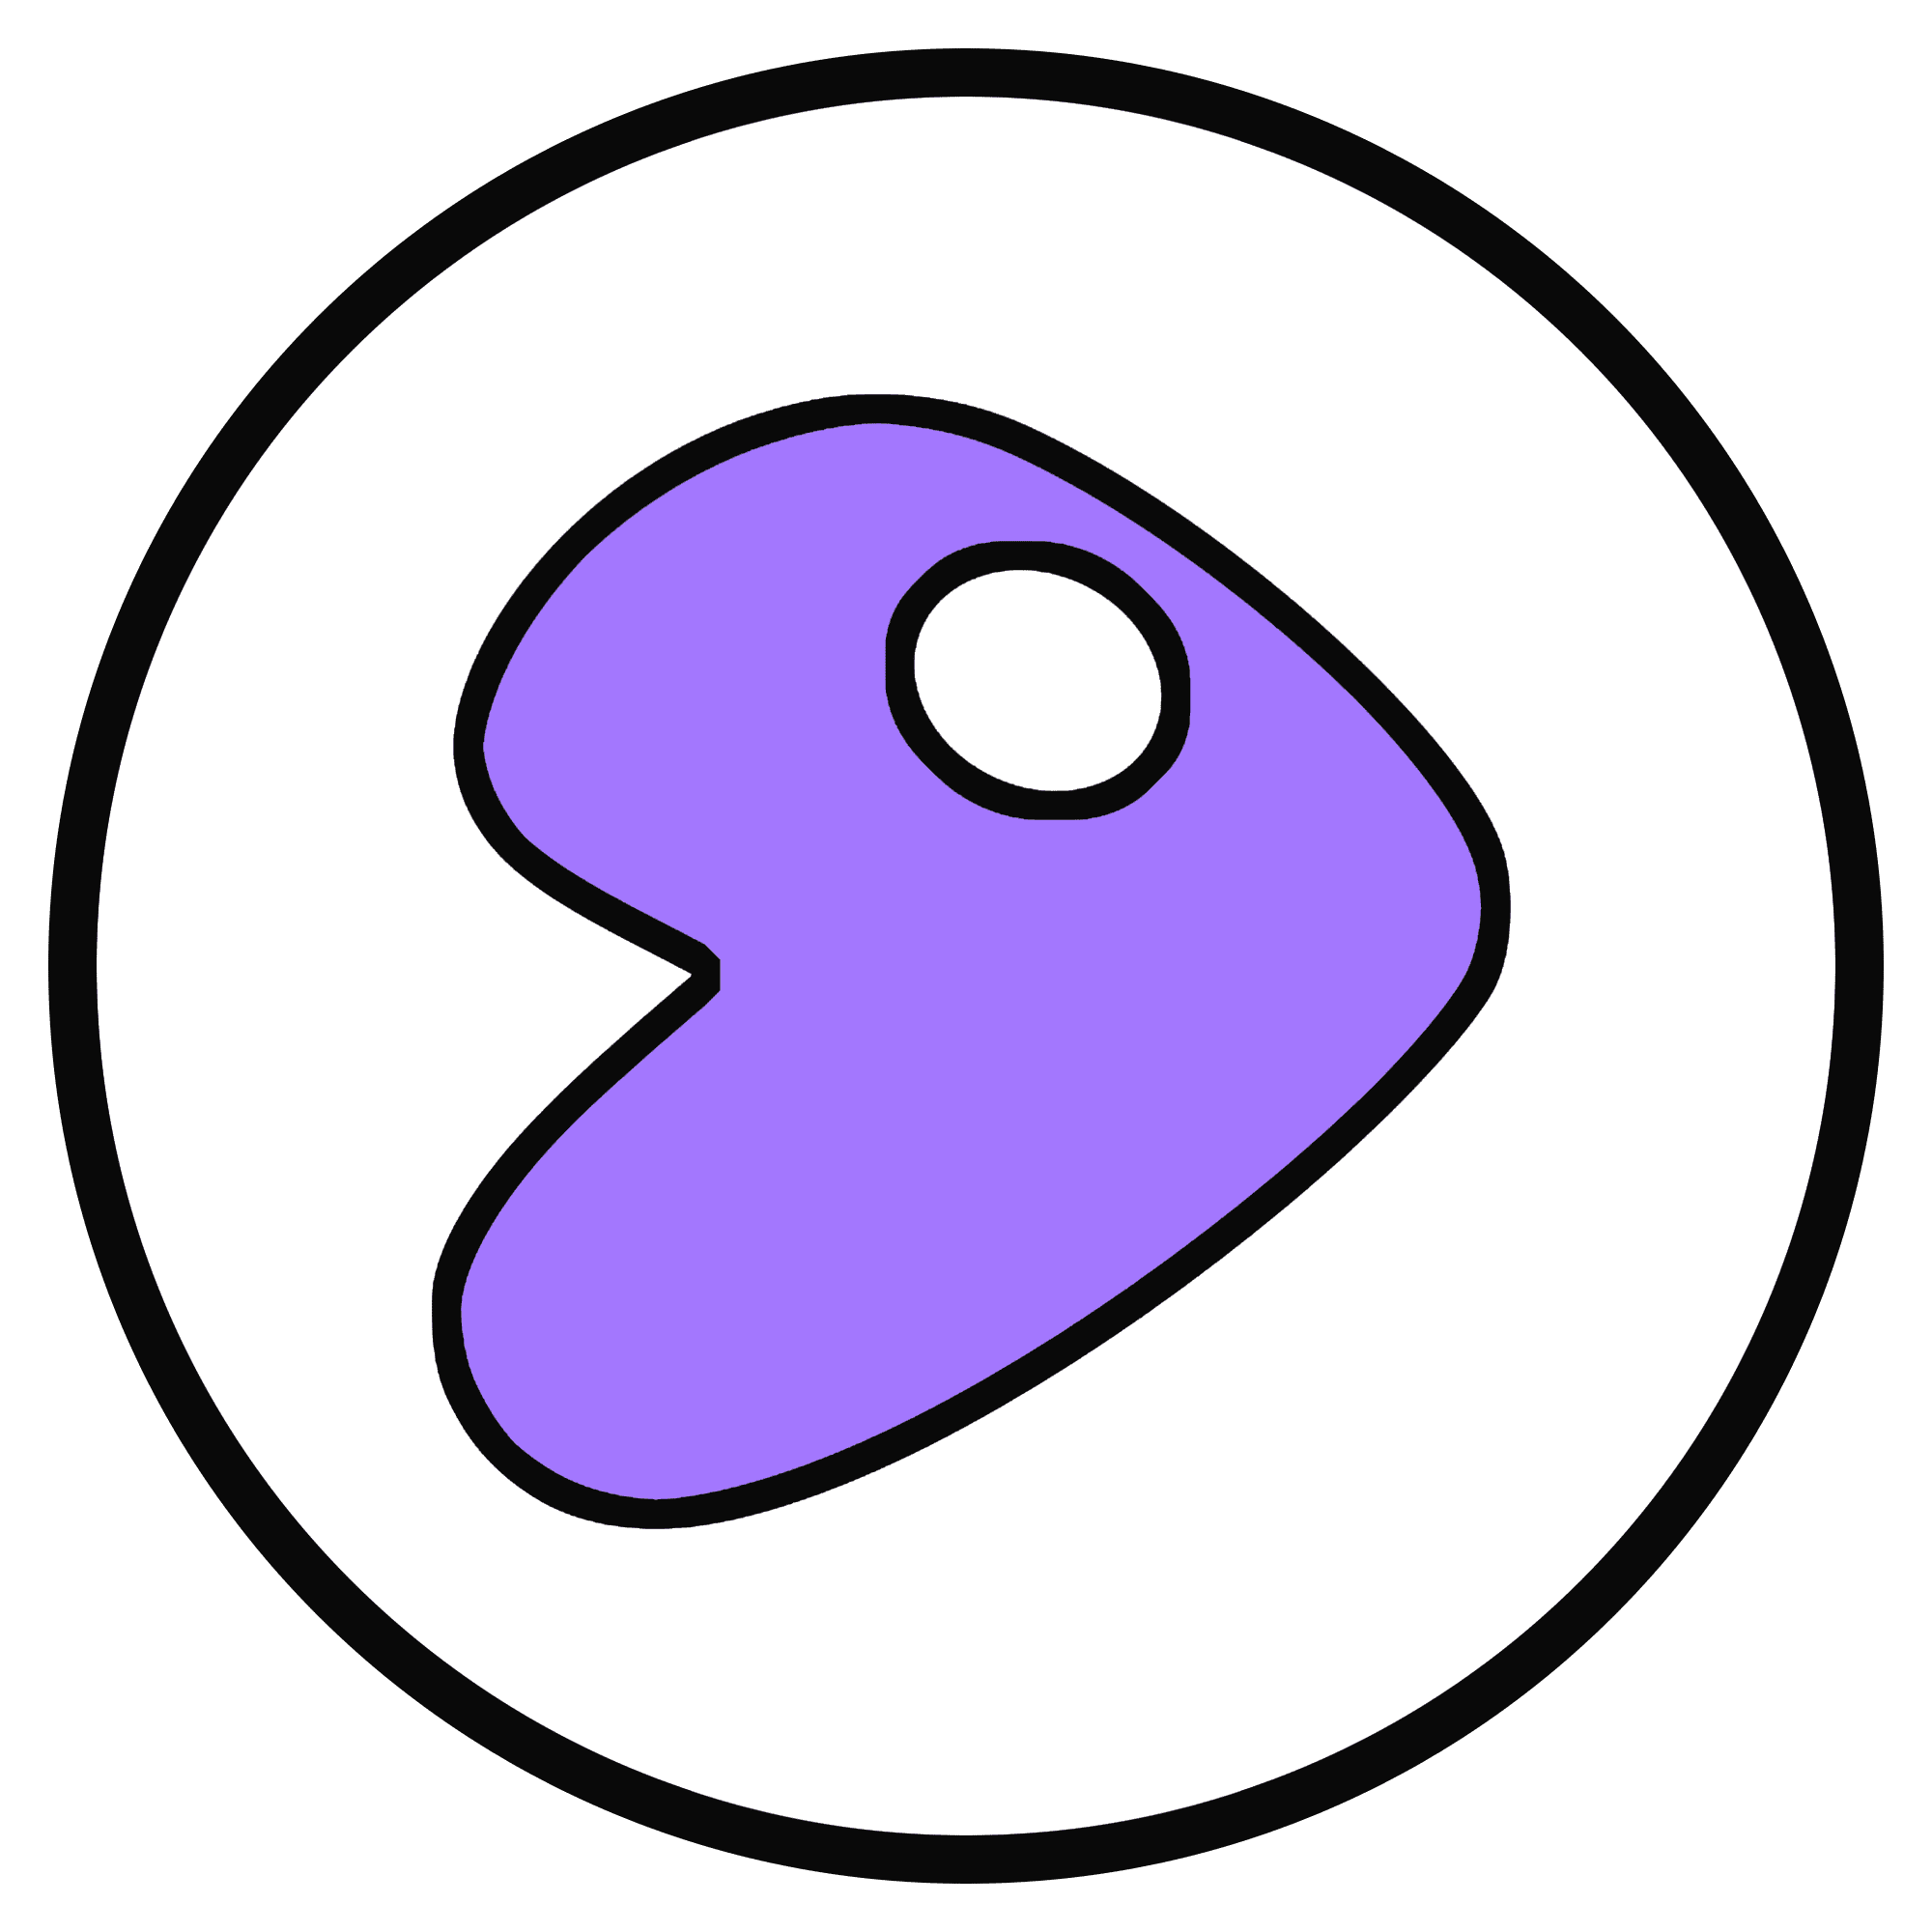 Gentoo OS logo